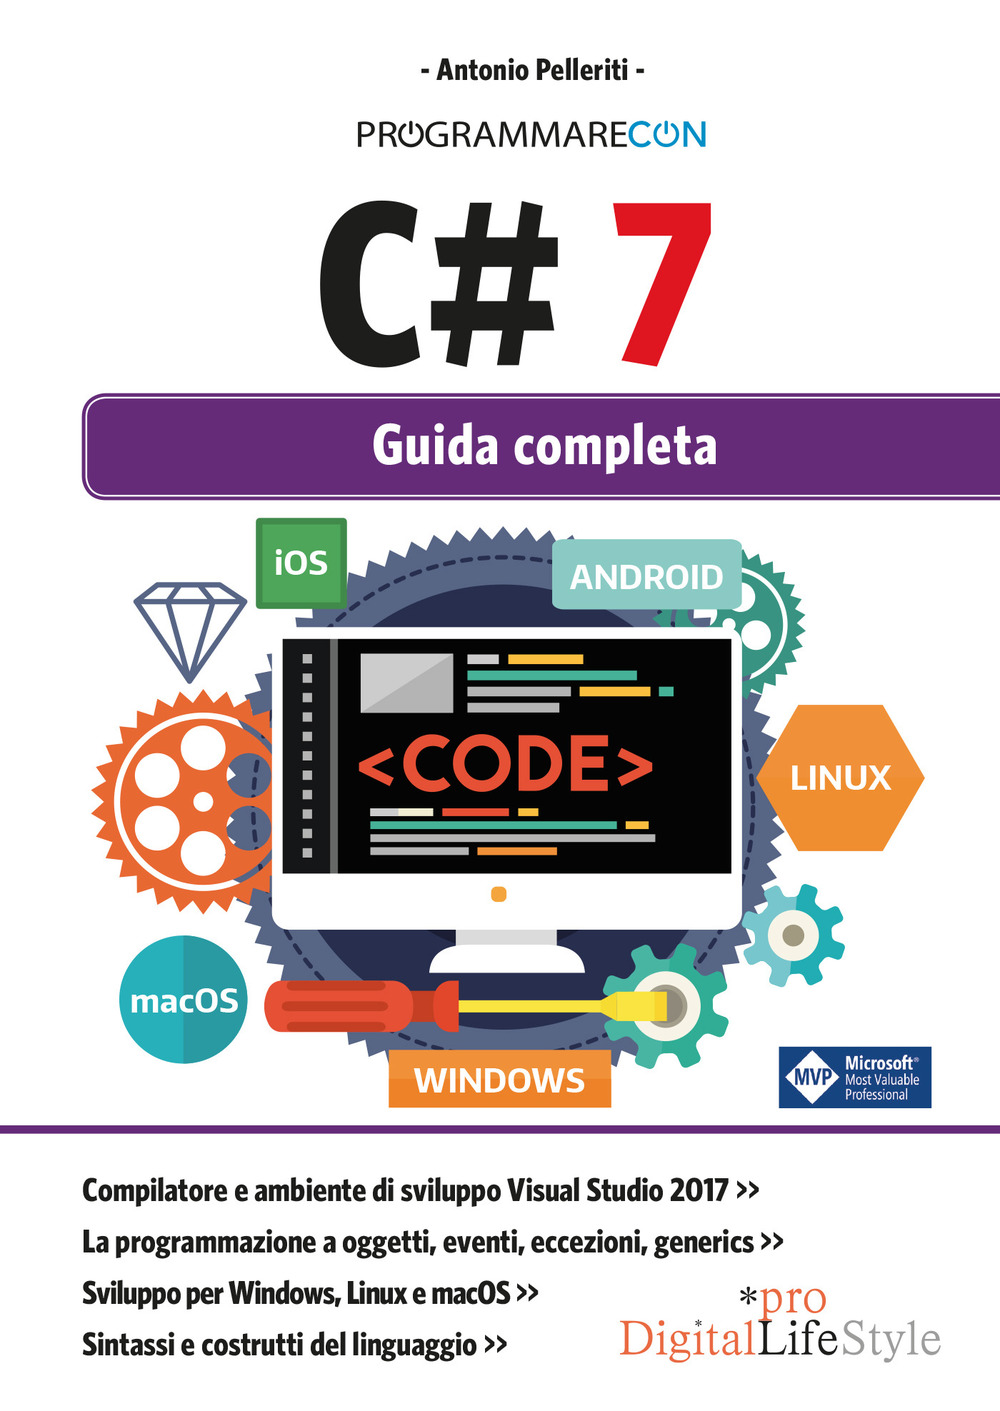 Image of Programmare con C# 7. Guida completa